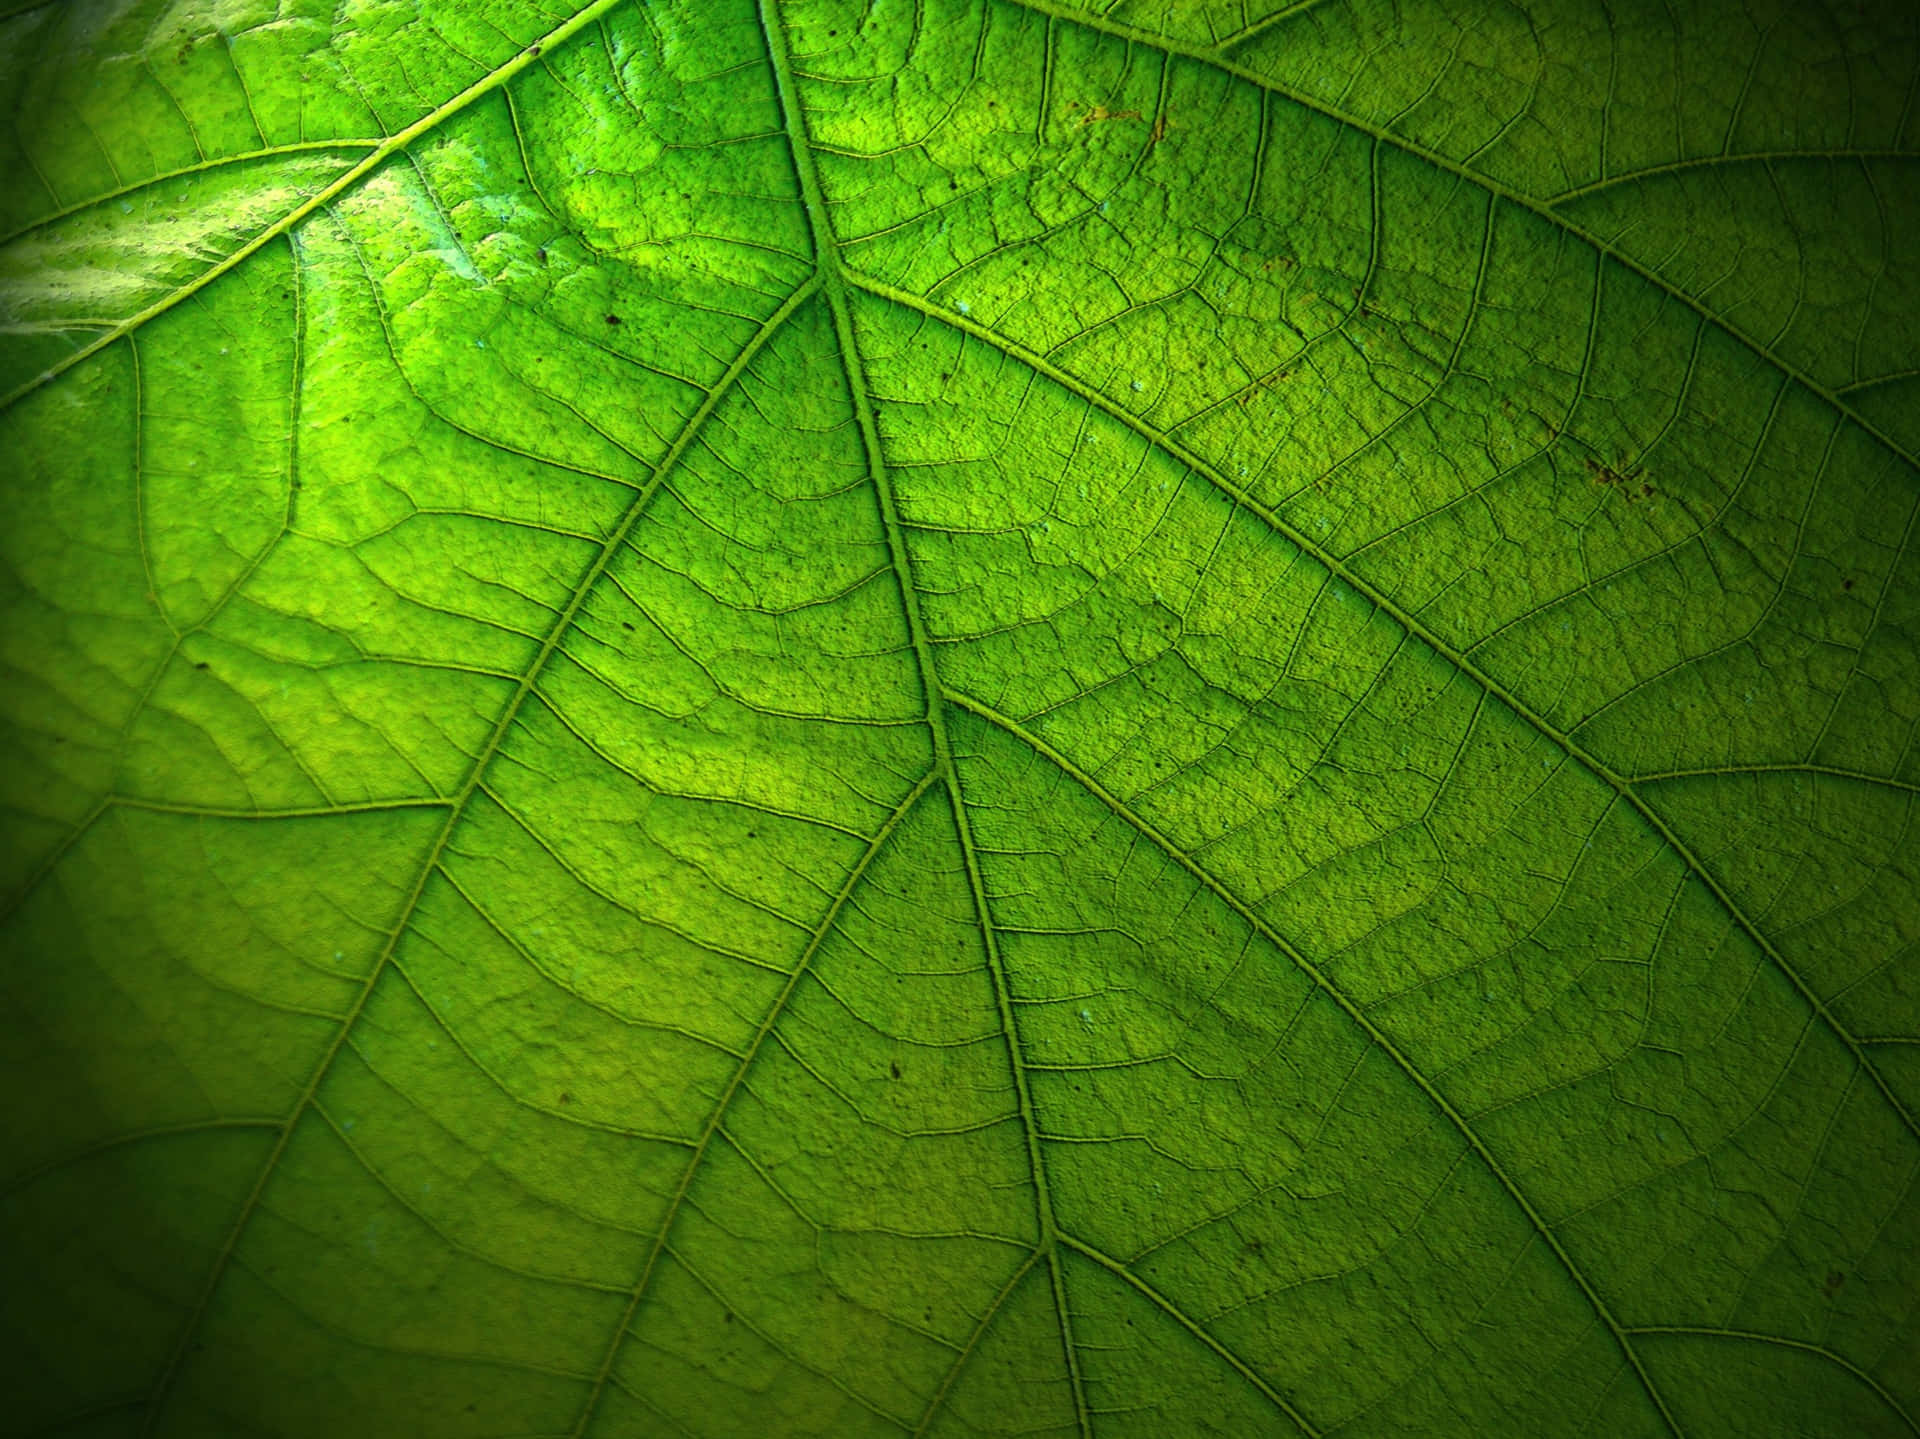 Natürlichergrüner Blätterhintergrund Perfekt Für Eine Vornehme Und Adäquate Dekoration.